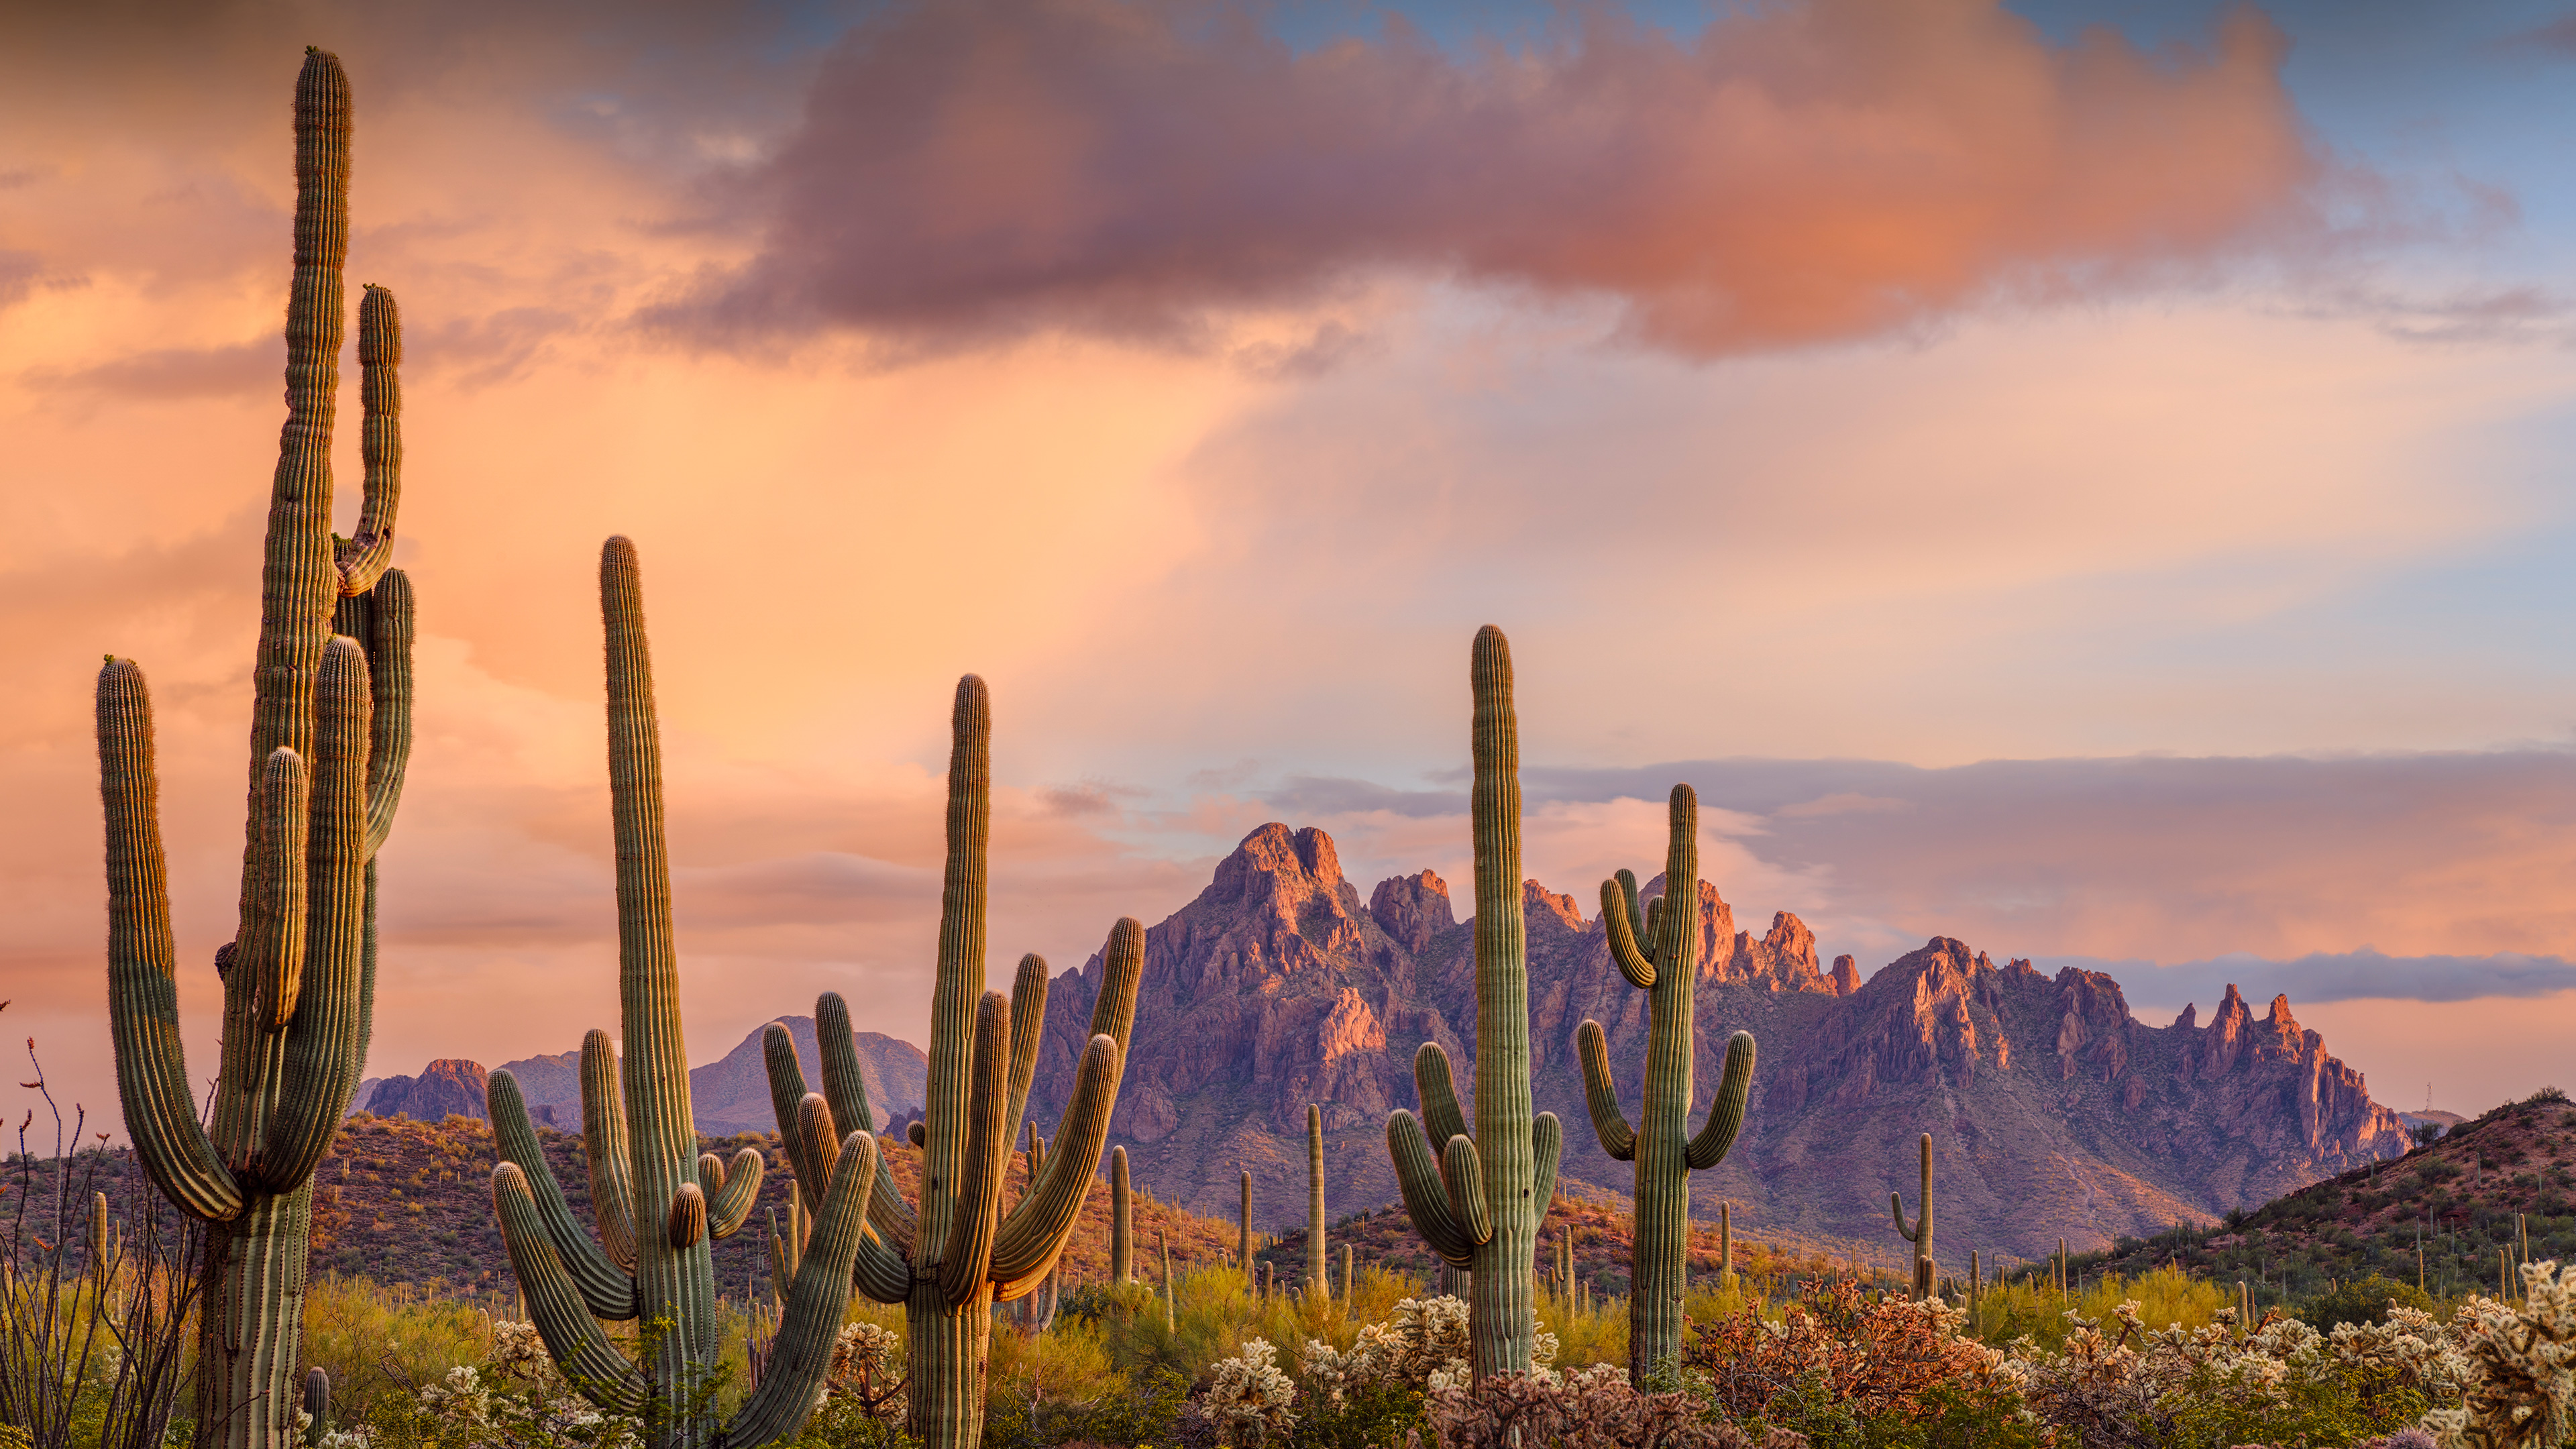 Saguaro cacti, Ironwood National Monument, Arizona by Jack Dykinga